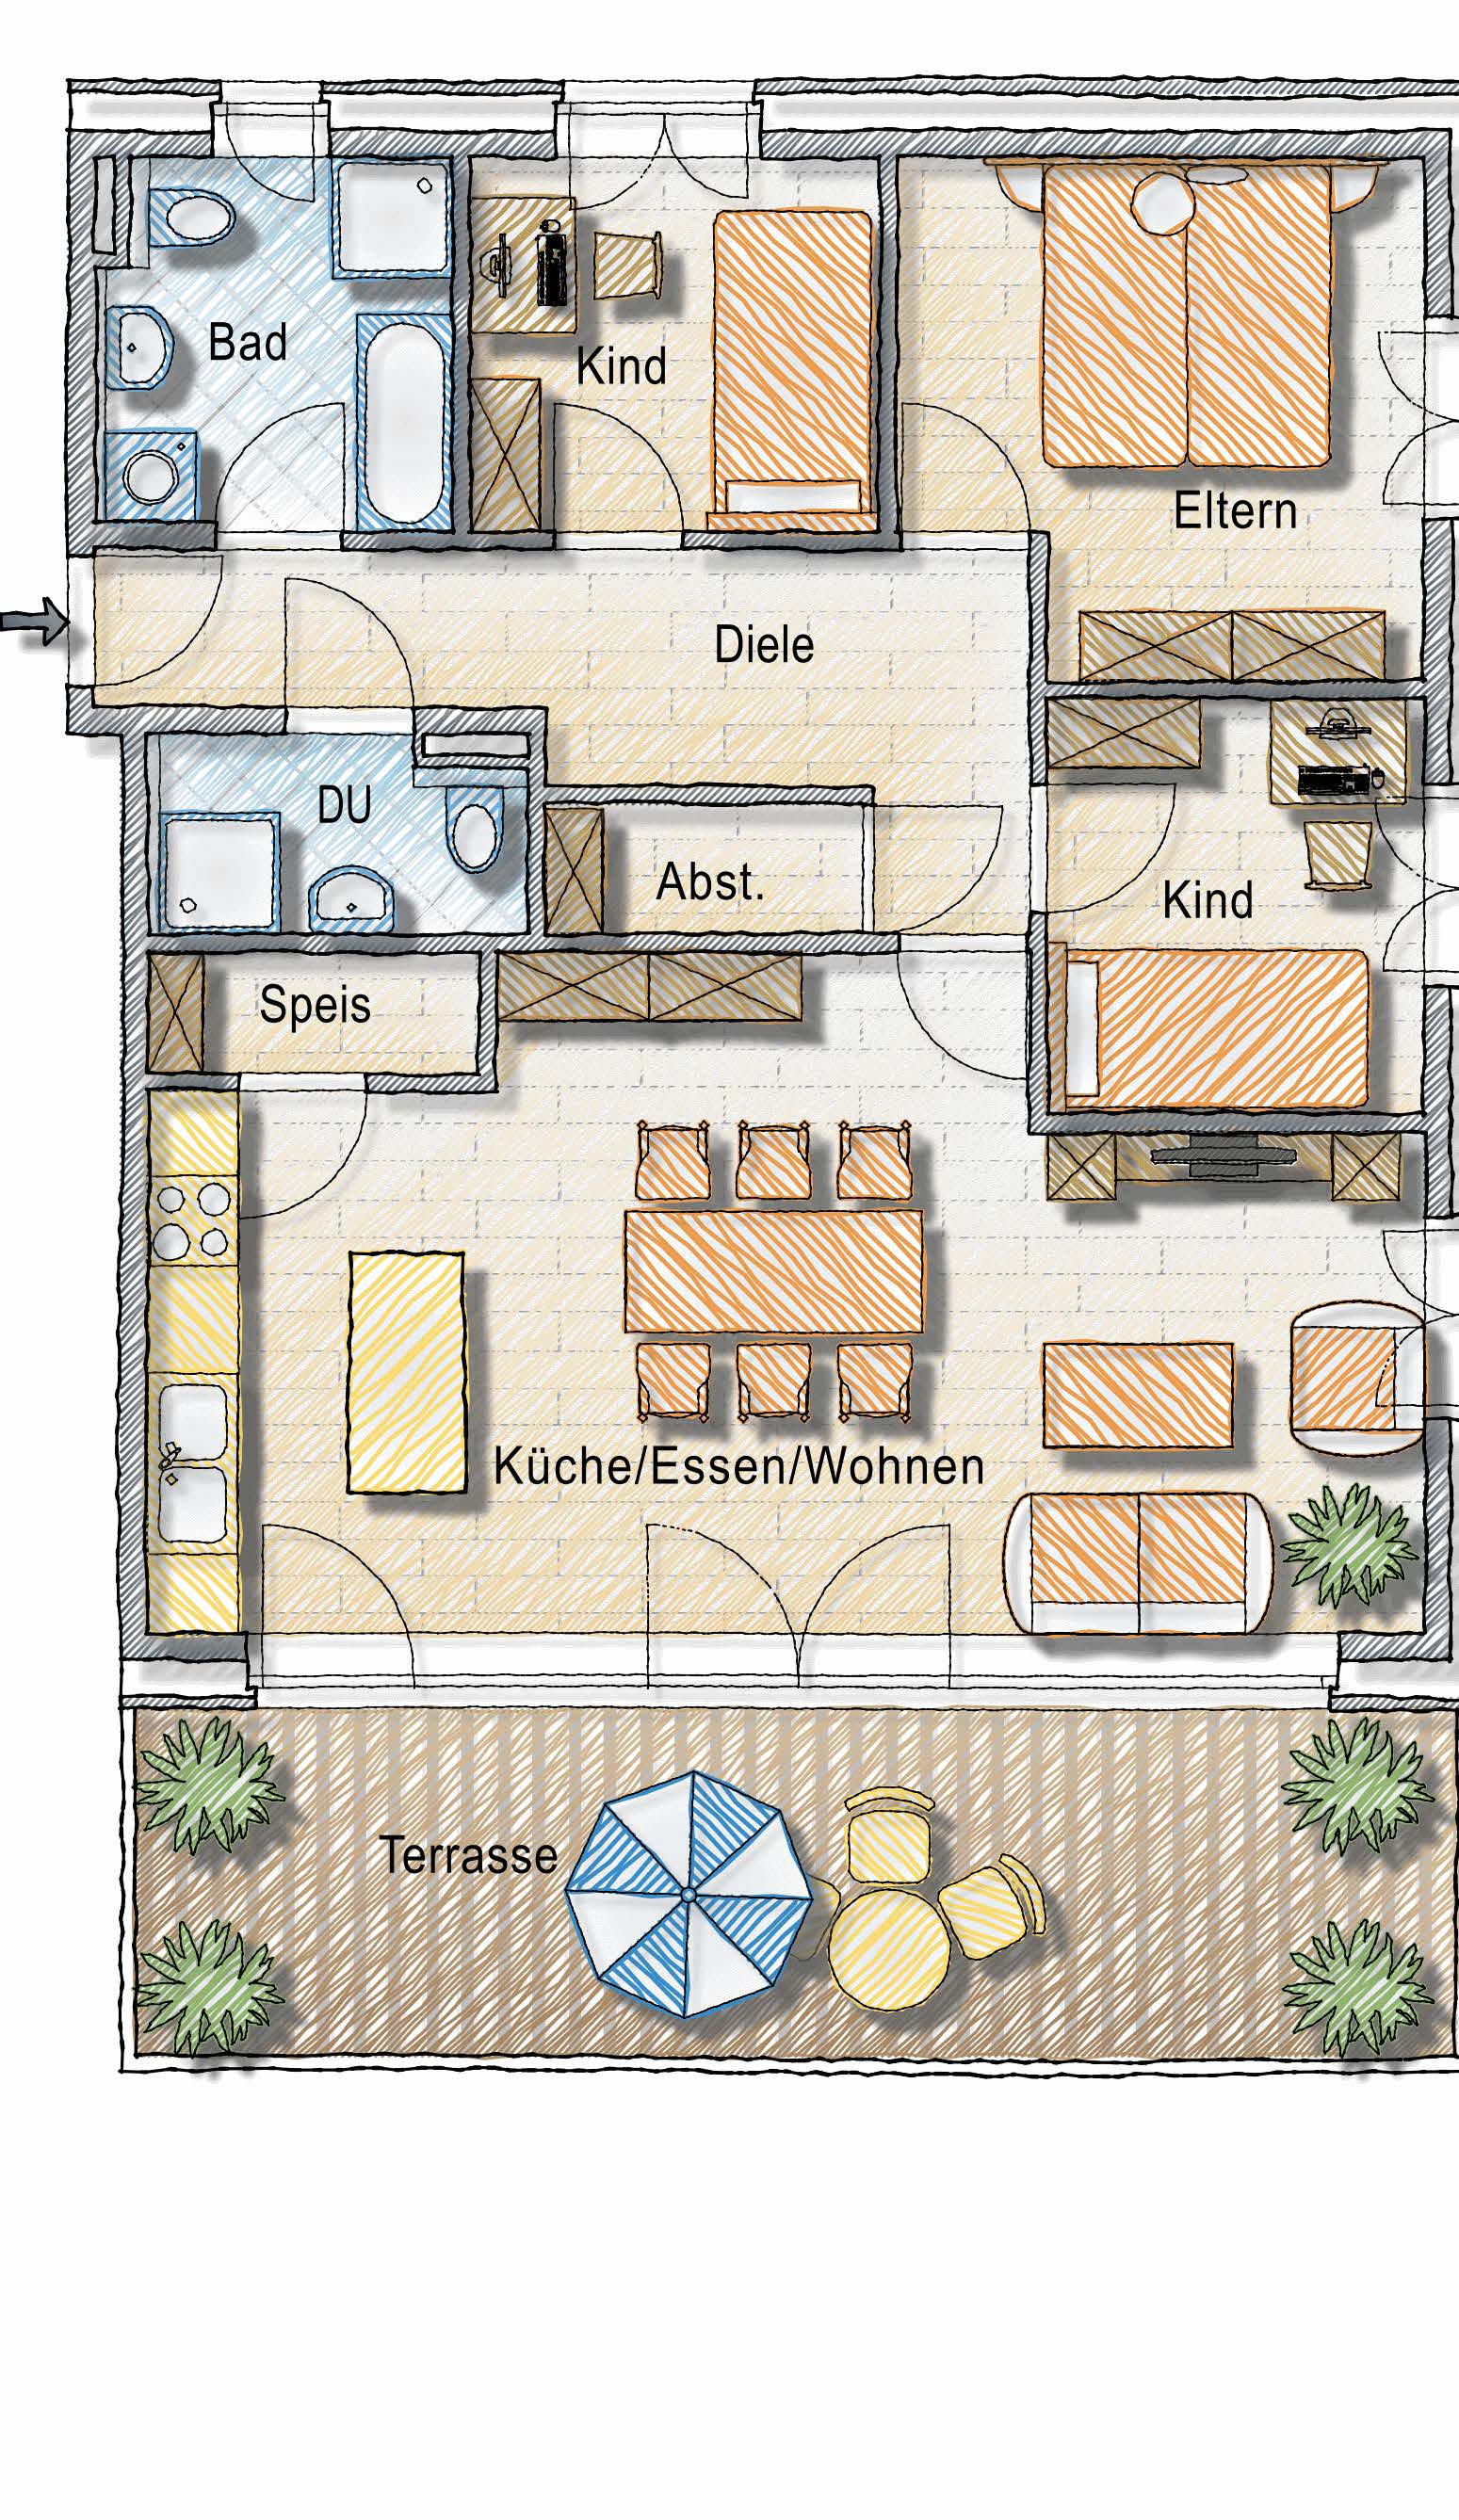 Top 11a Dachgeschoss 4-Zimmer-Wohnung Wohnen / Kochen Eltern Kind 1 Kind 2 Bad/WC Dusche/WC Abstellraum Diele Wohnfl.